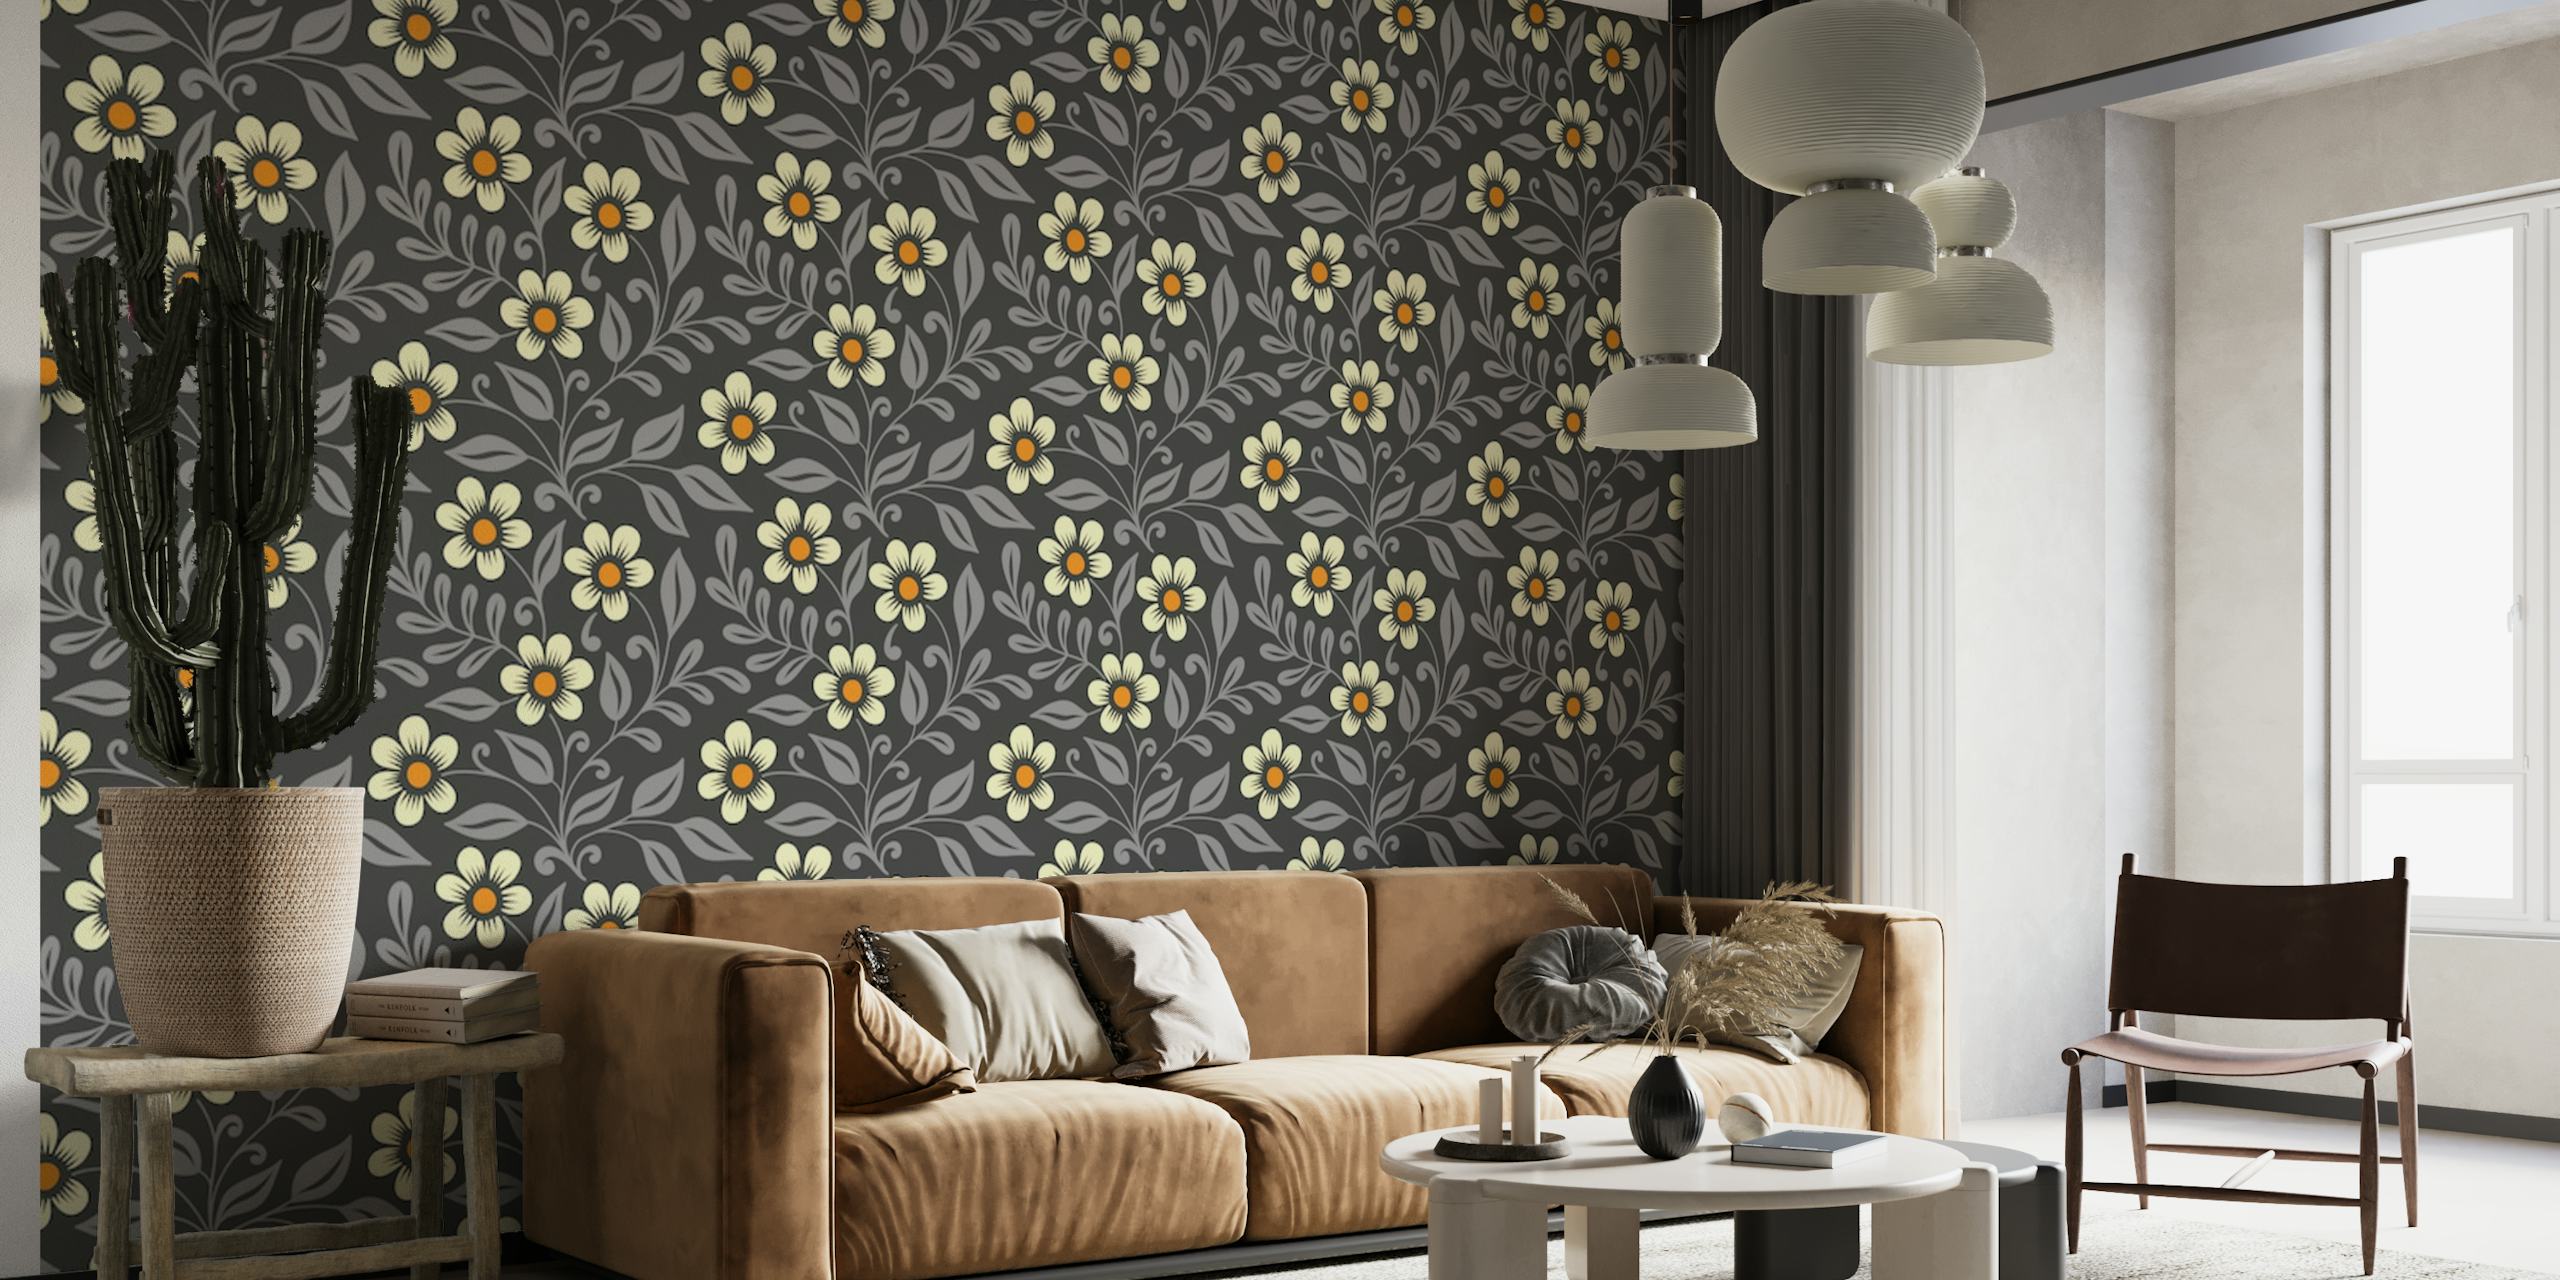 Encantador mural de pared con estampado floral de florecitas sobre un fondo gris